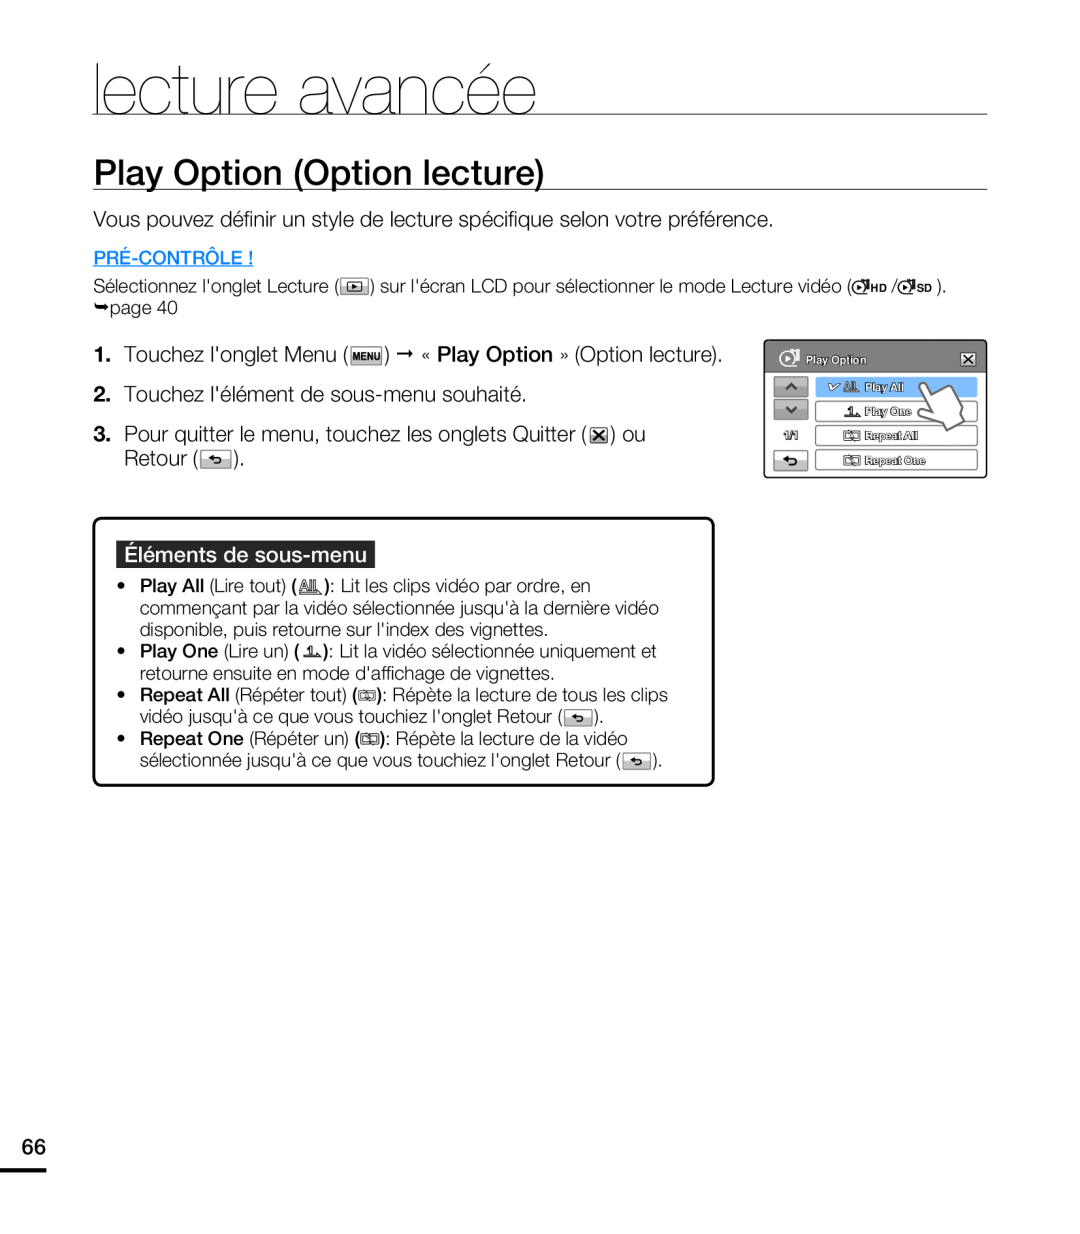 Samsung HMX-T10WP/EDC, HMX-T10OP/EDC manual lecture avancée, Play Option Option lecture, Éléments de sous-menu, Pré-Contrôle 